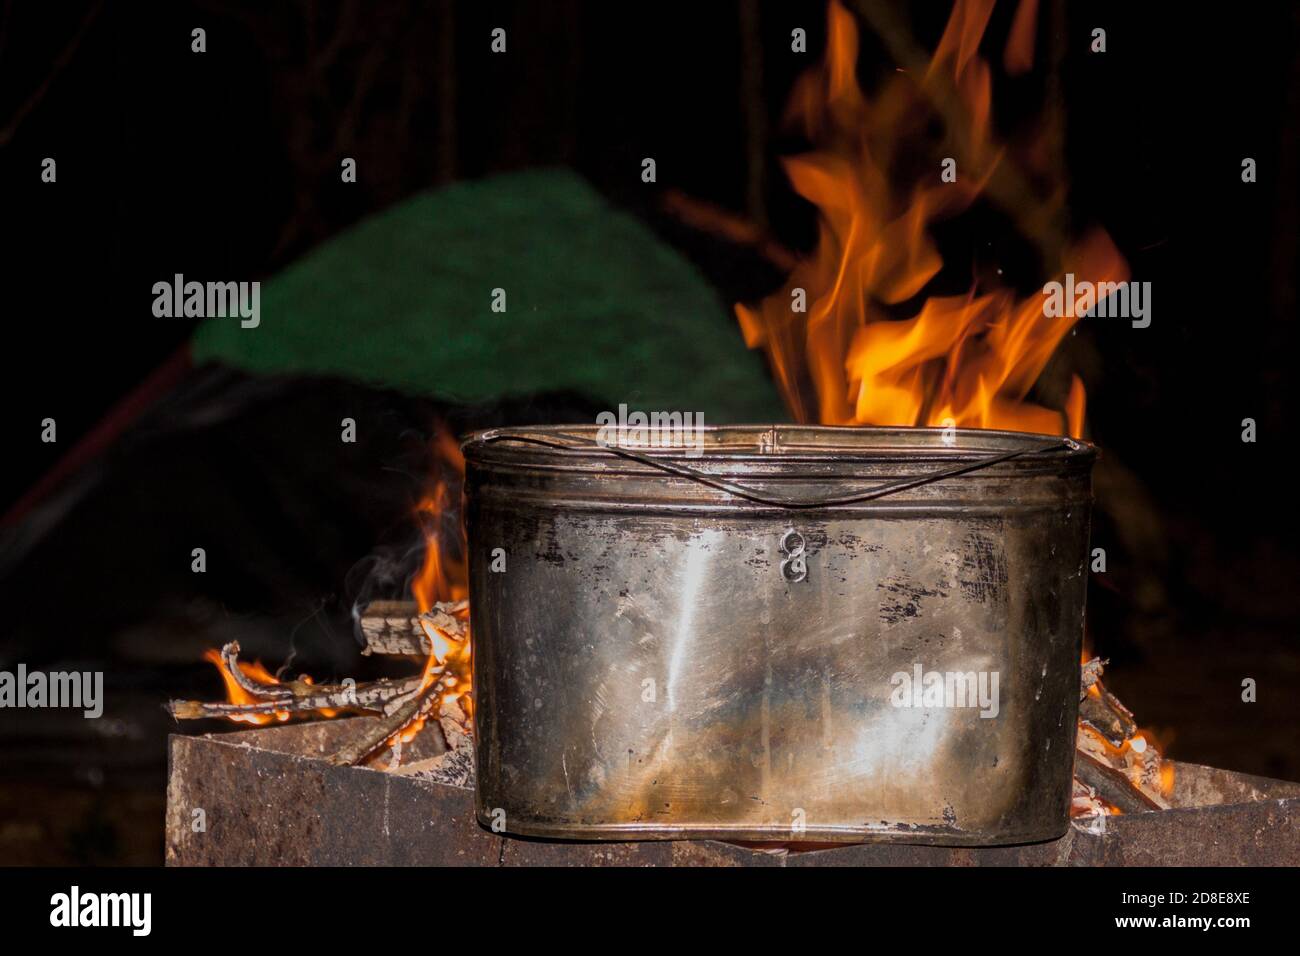 dîner au camping. bouilloire sur un feu de cheminée, feu, fumée. cuisine sur un voyage. repos sauvage. Banque D'Images